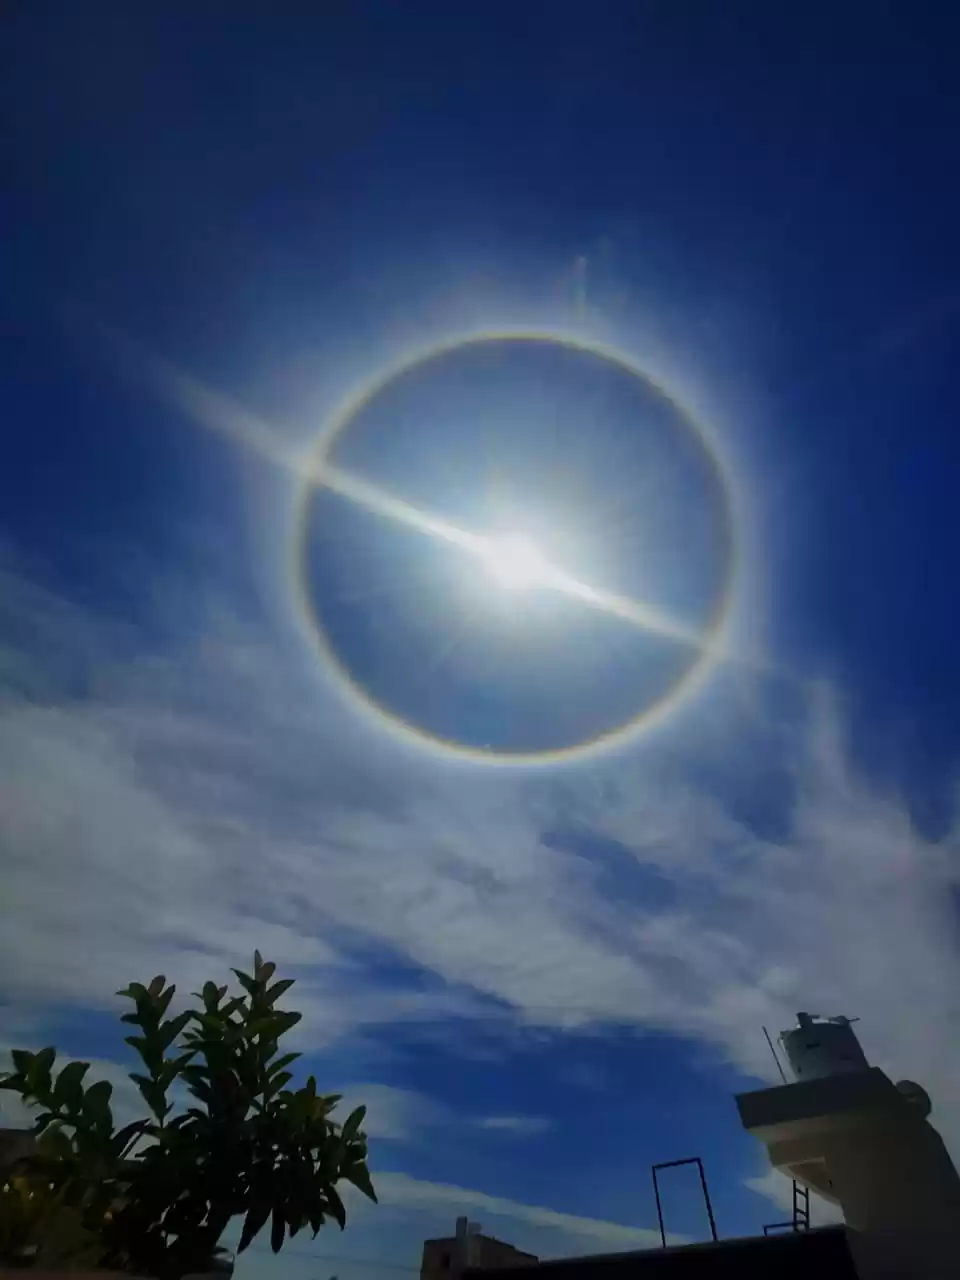 There's a halo in the sky today: Divine intervention or scientific  phenomenon?